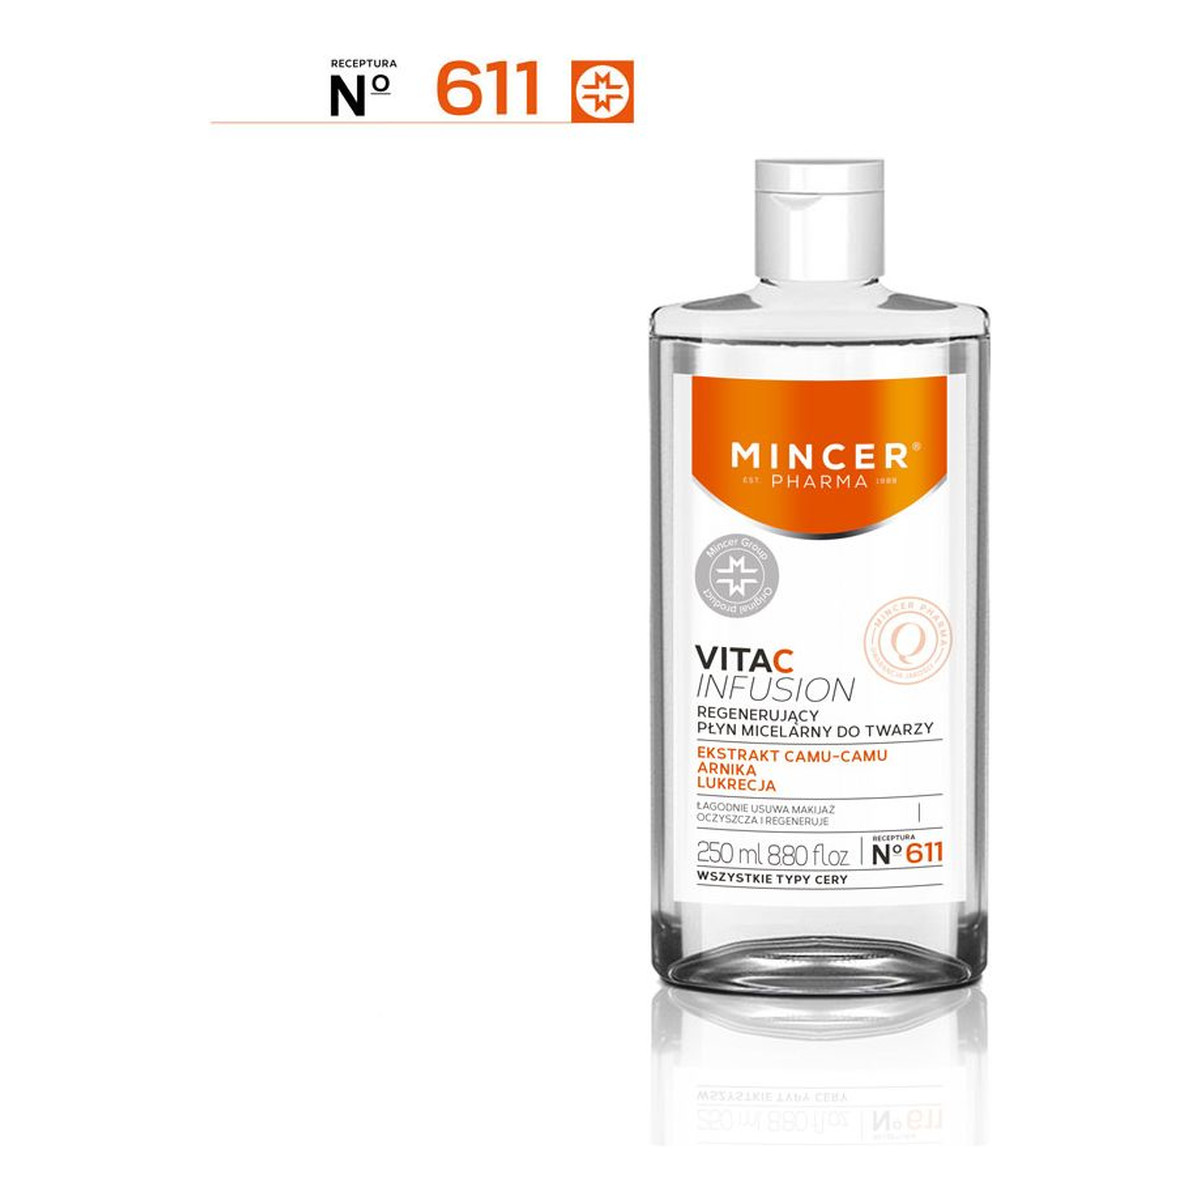 Mincer Pharma Vita C Infusion Płyn micelarny regenerujący do twarzy 611 250ml